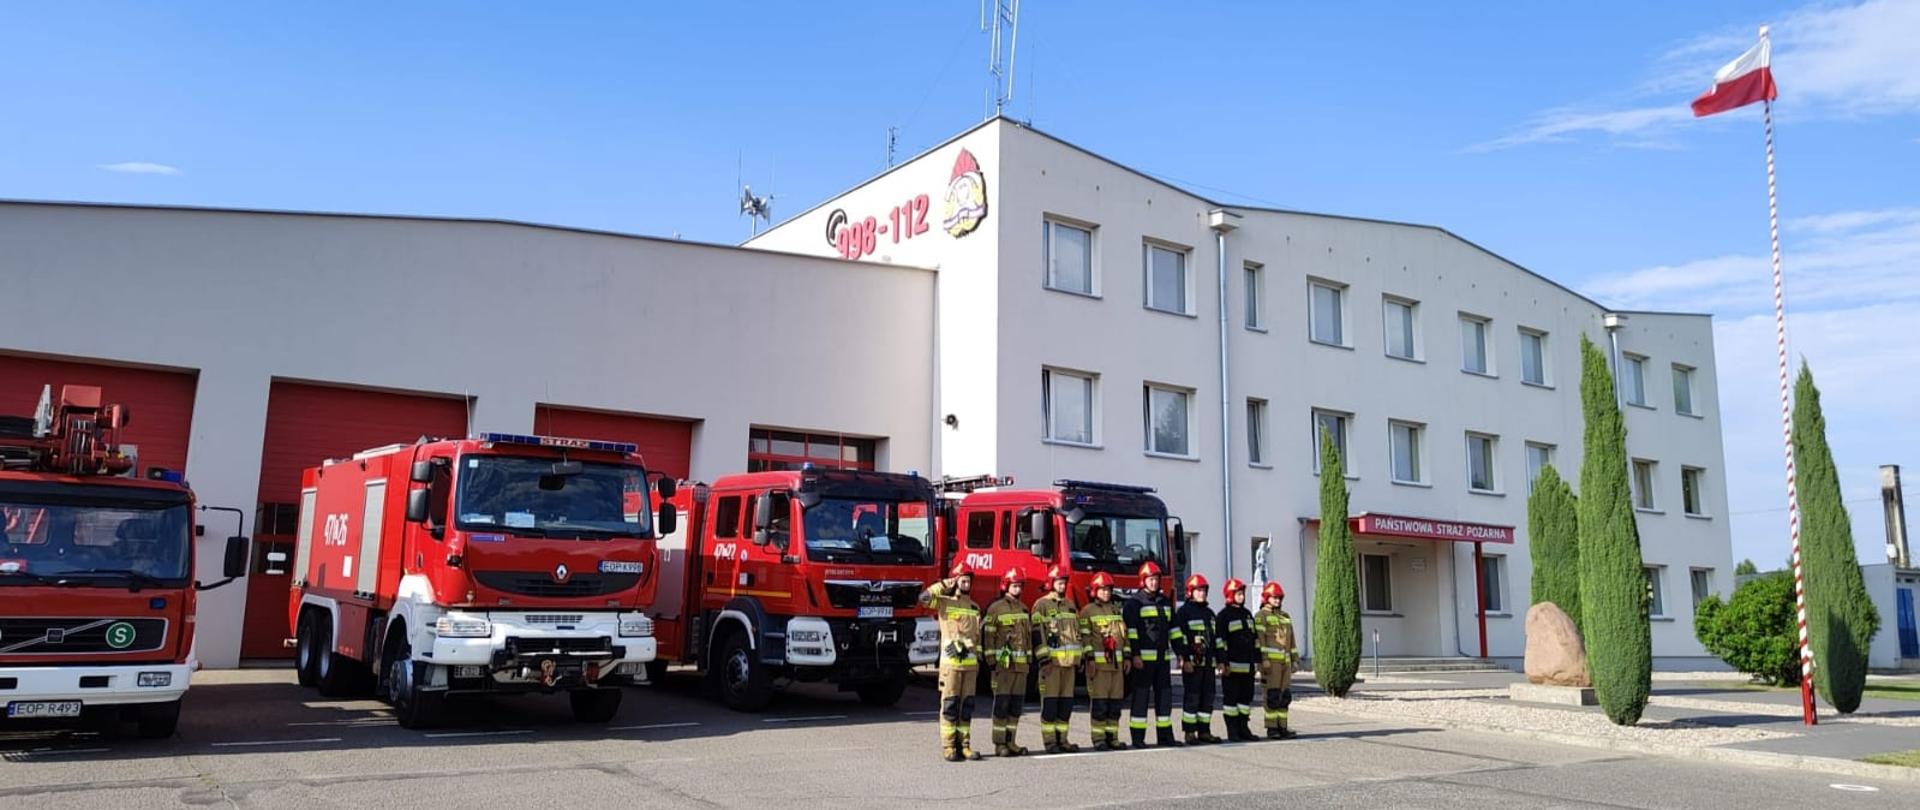 Zdjęcie przed Komendą Powiatową PSP w Opocznie przedstawia wystawione wozy bojowe oraz strażaków w umundurowaniu specjalnym oddających honory.